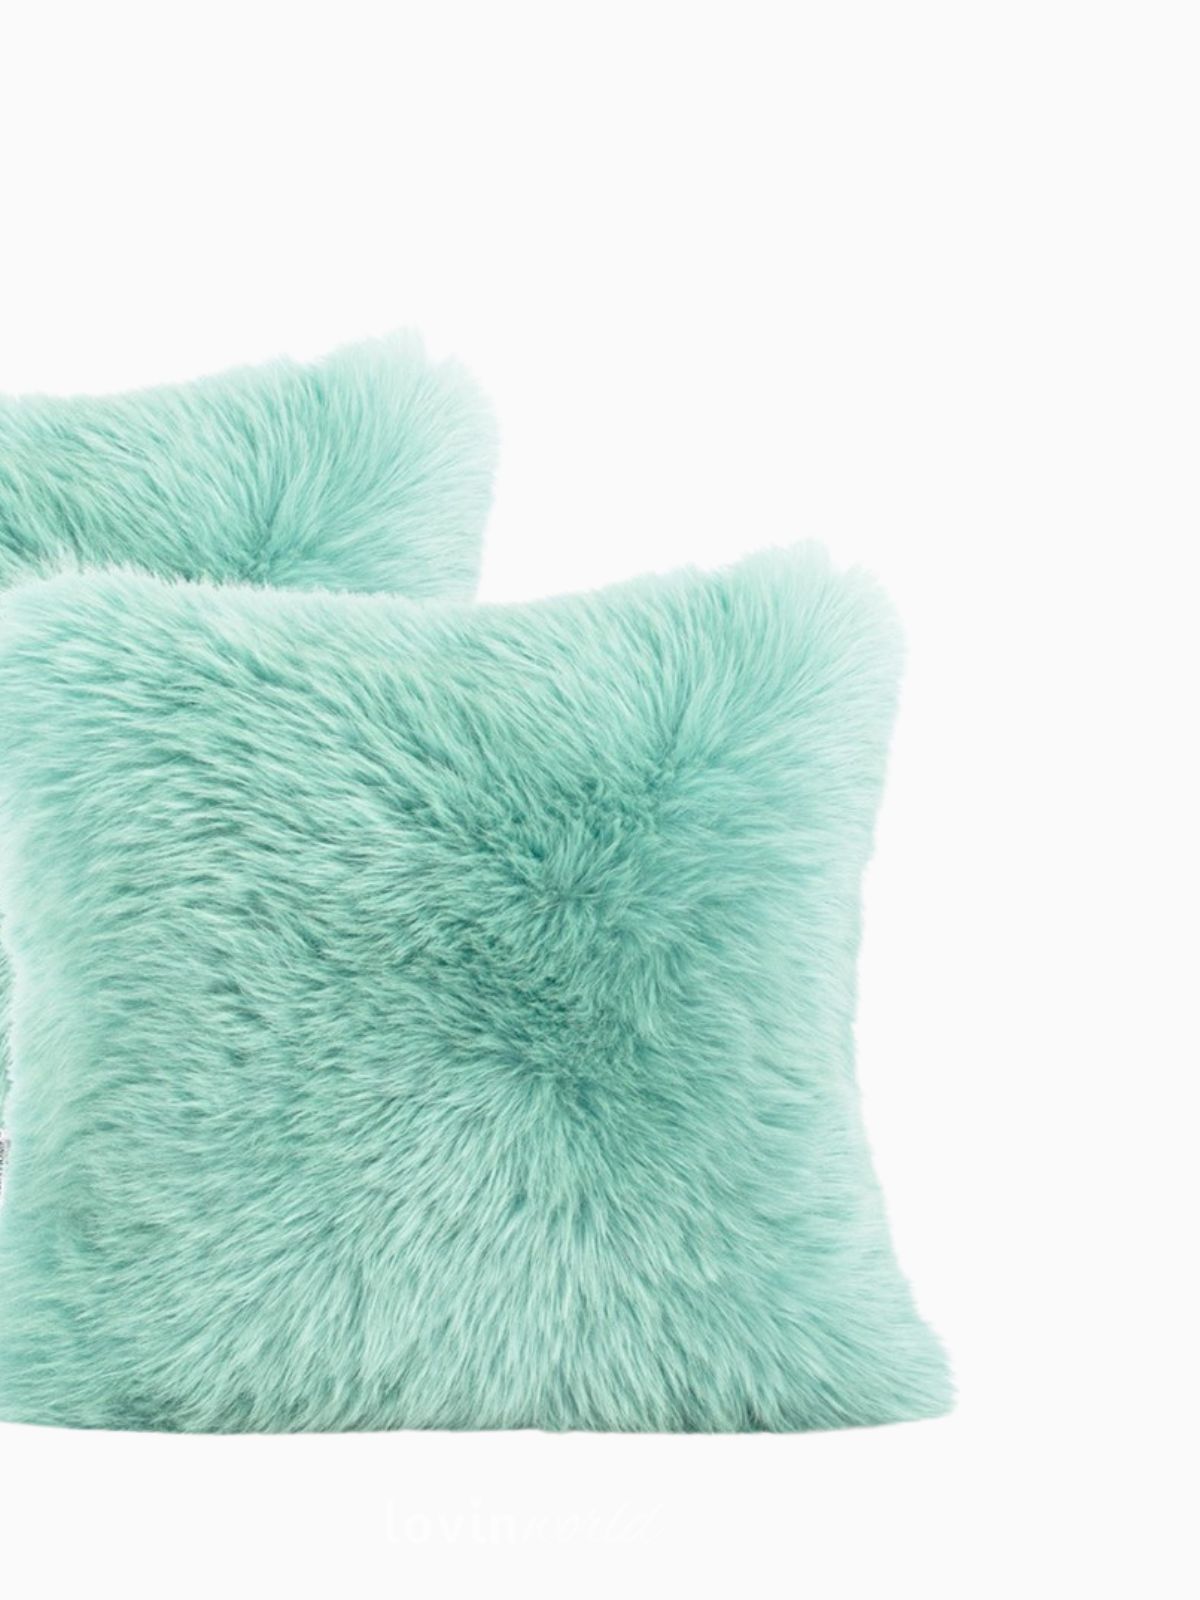 2 Federe per cuscino Dokka in colore verde acqua 45x45 cm.-5